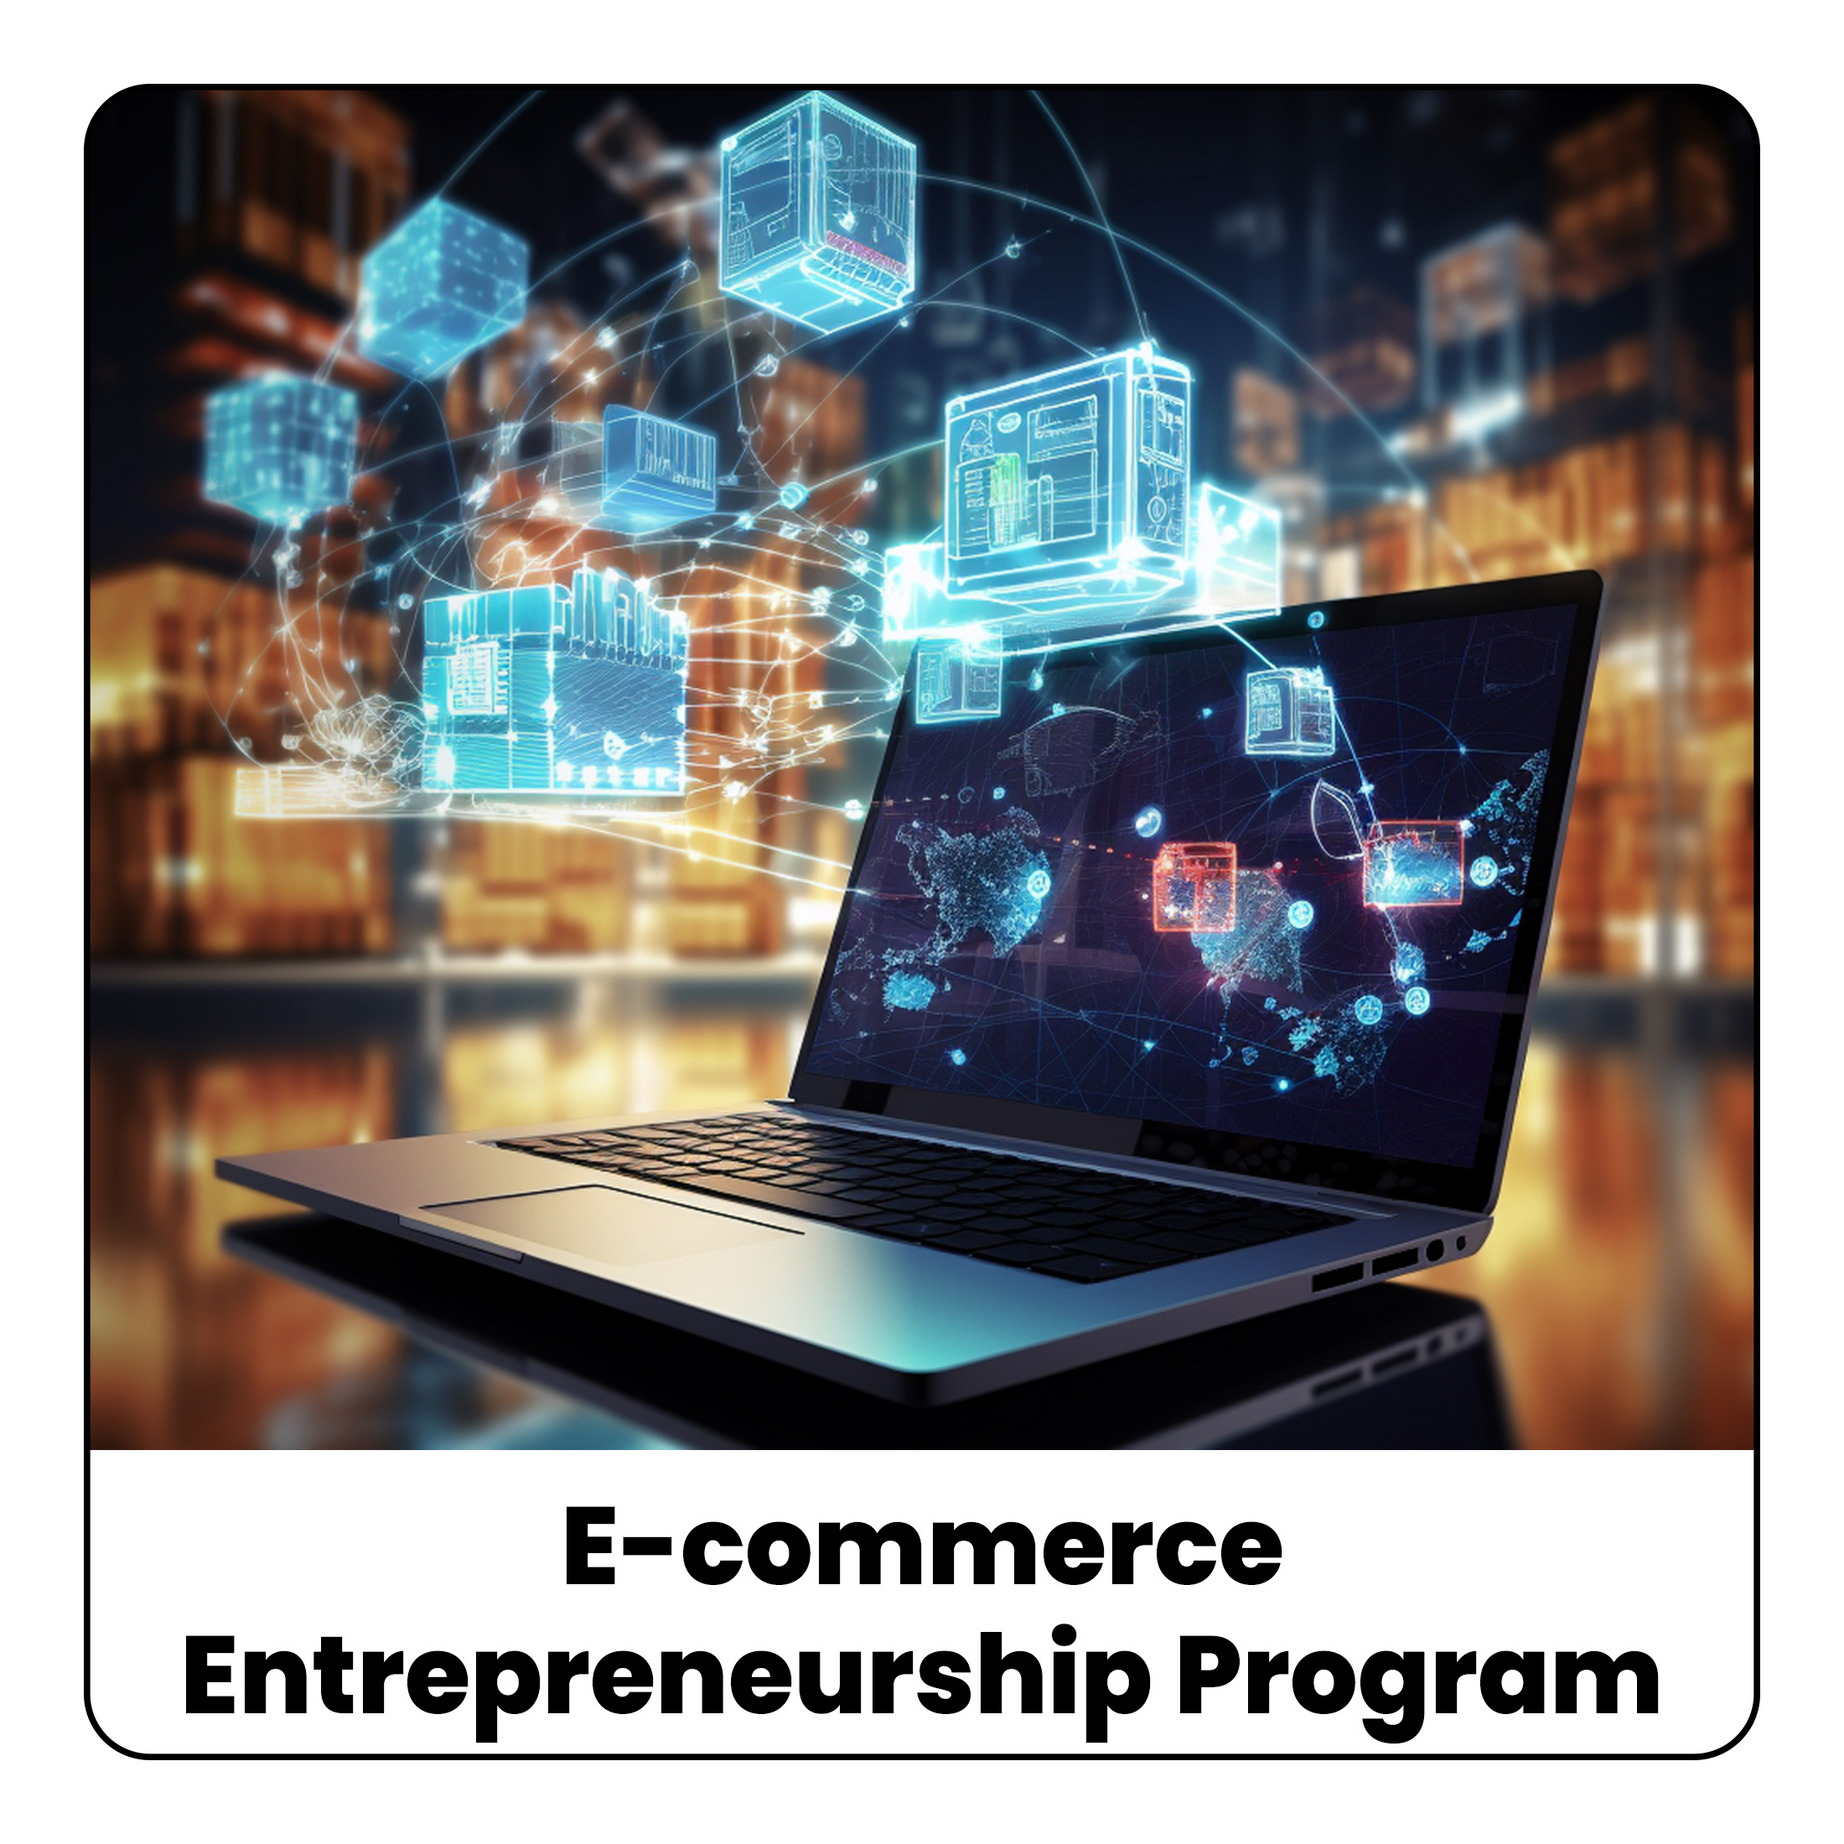 E-commerce Entrepreneurship Program